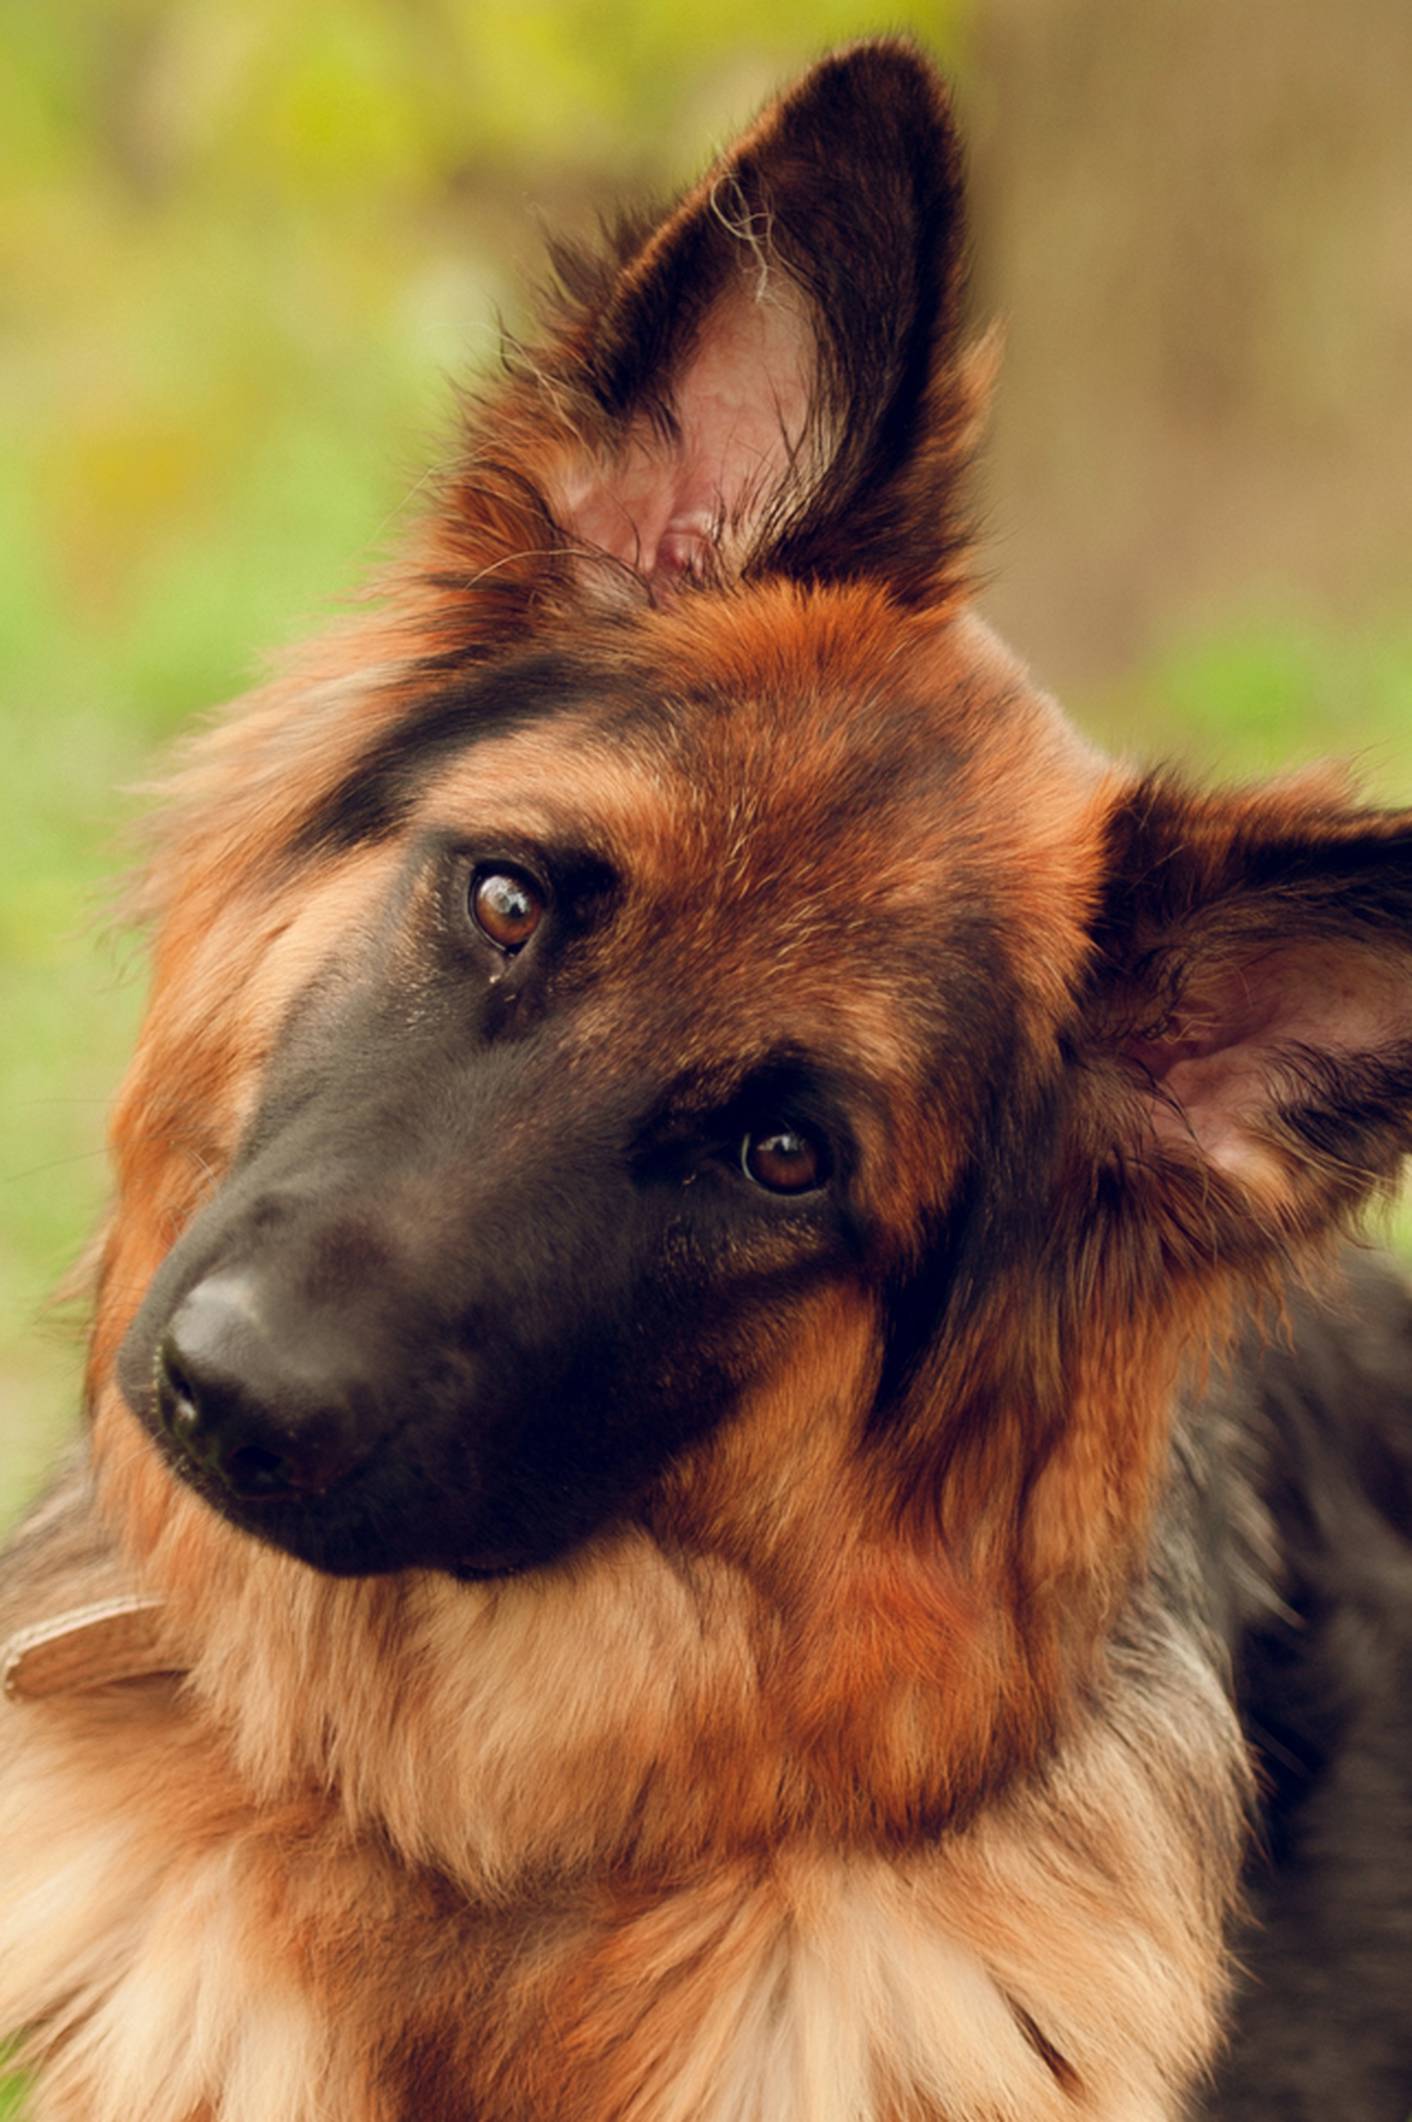 Psi u nosu imaju 'infracrveni senzor' koji detektira lovinu